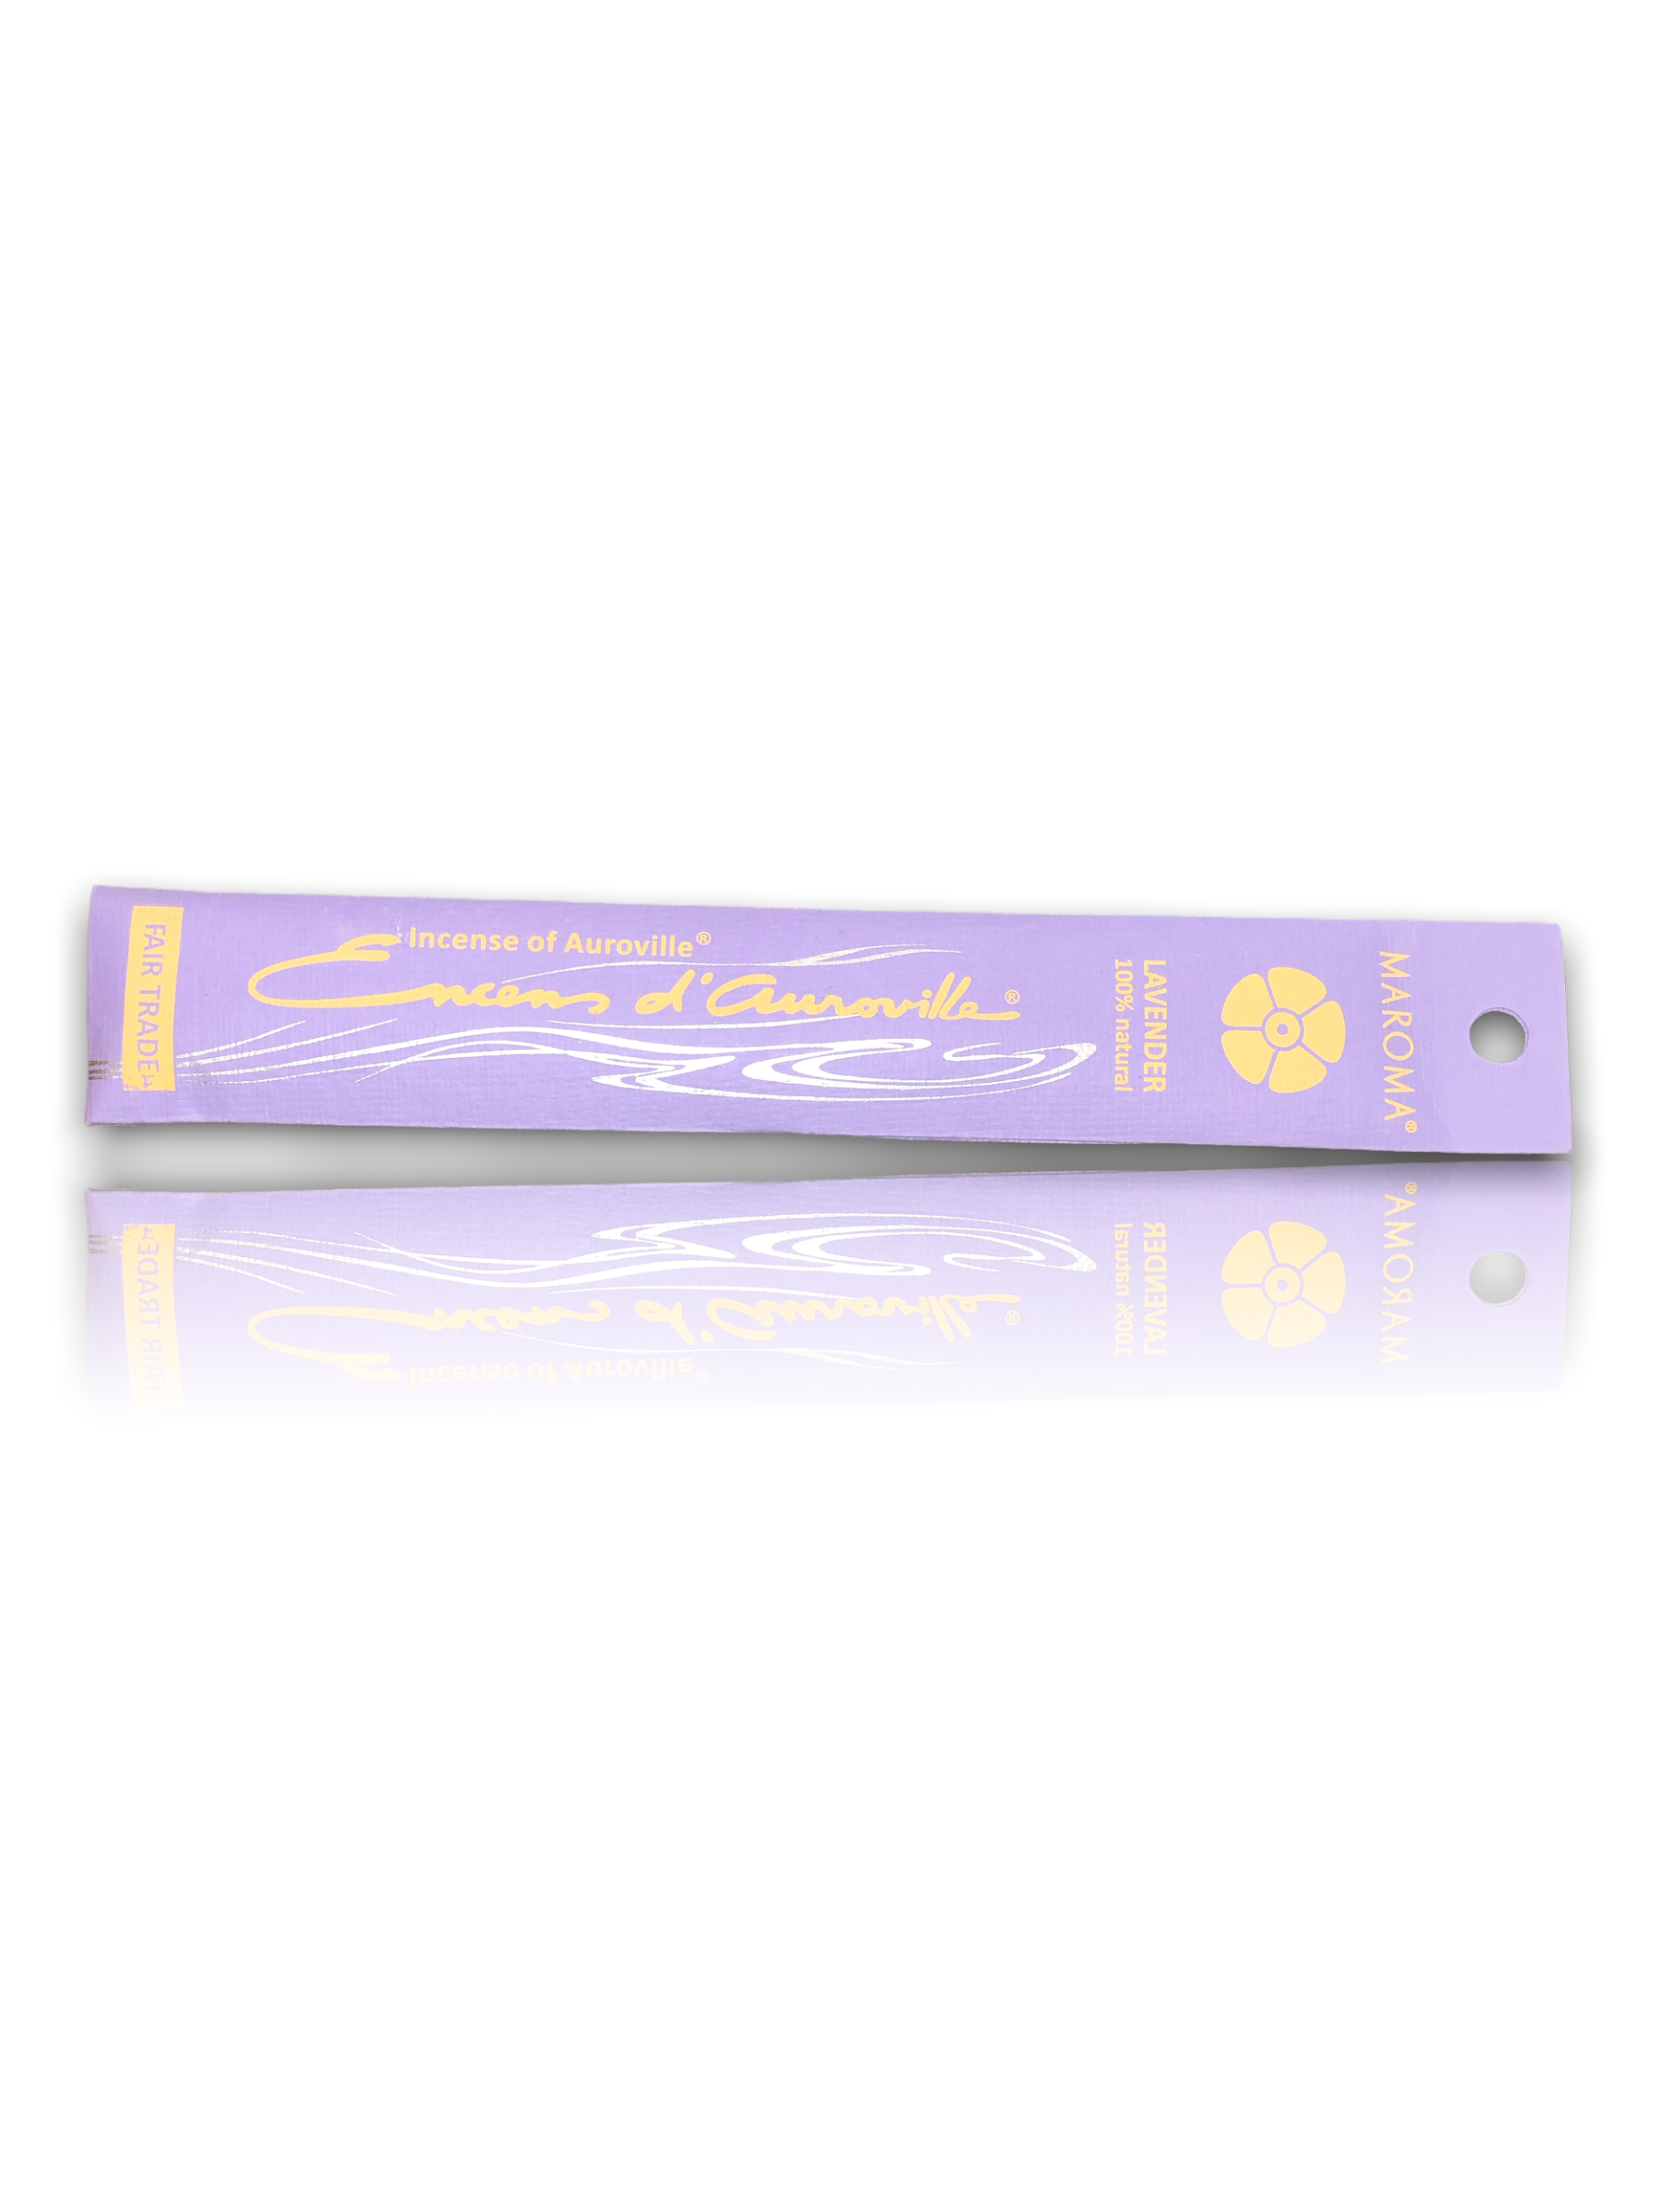 Maroma Lavender Incense Sticks - 10pack - HealthyLiving.ie